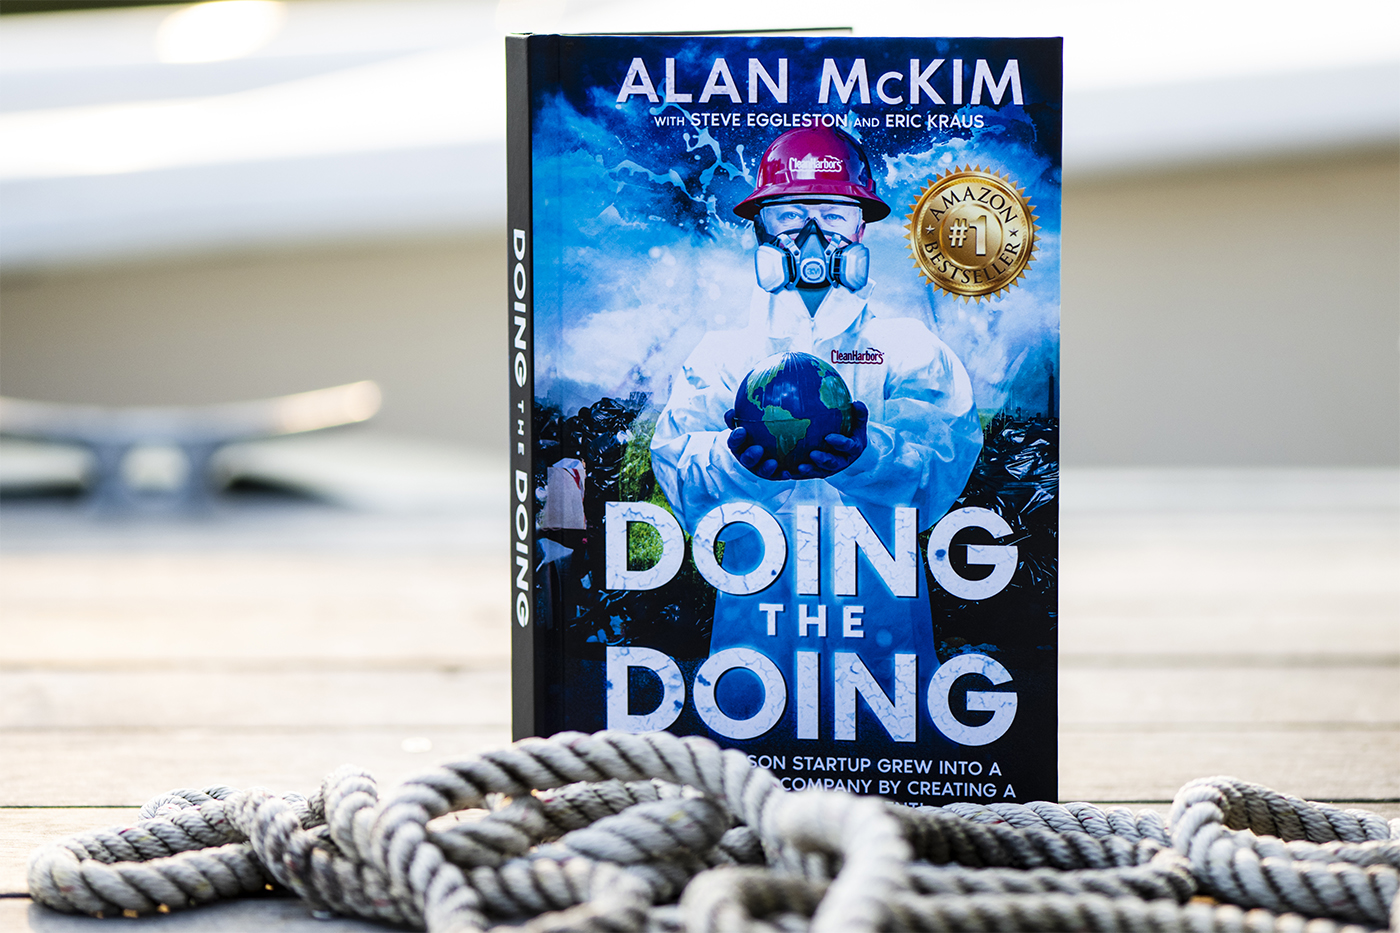 Alan McKim's book "Doing the Doing"